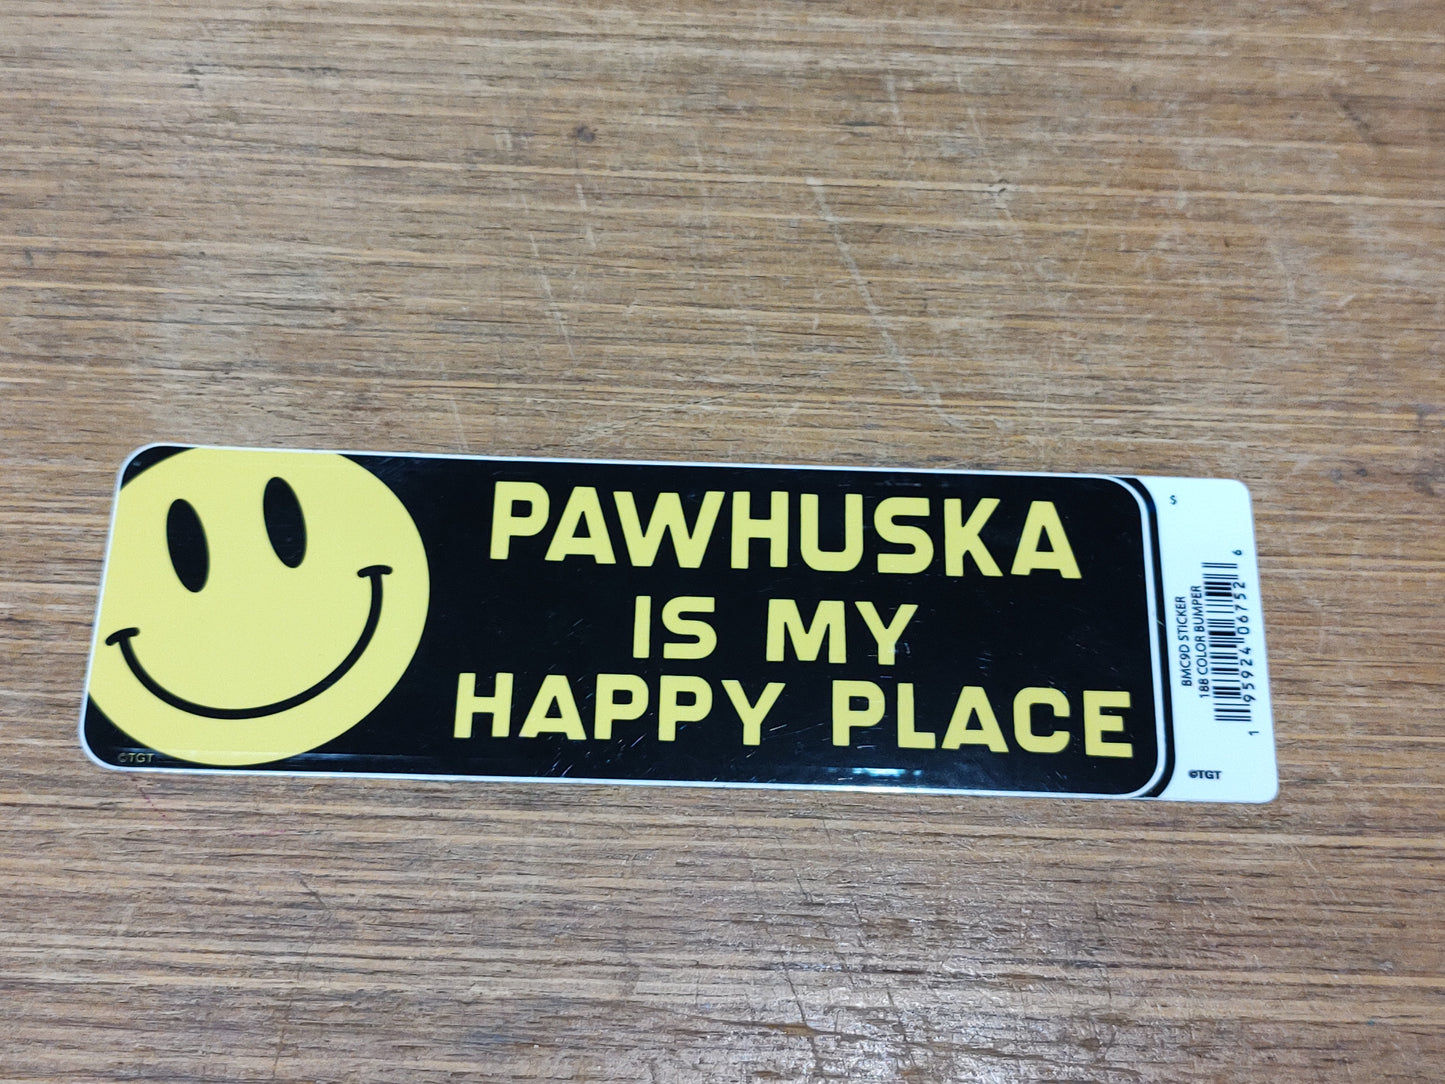 Pawhuska is my happy place - sticker